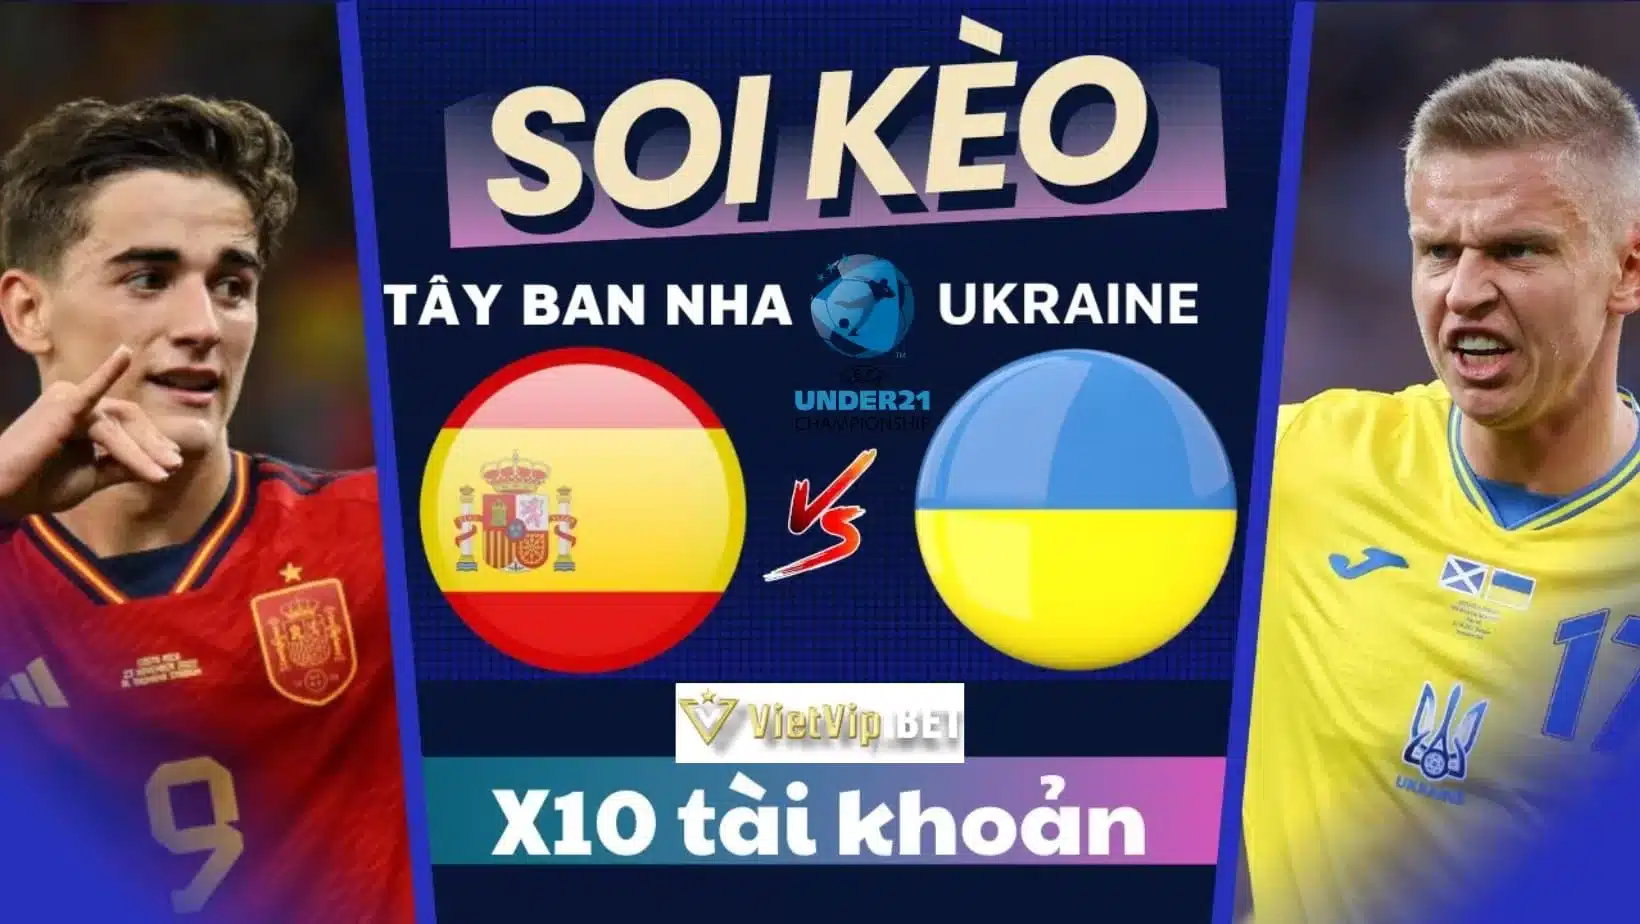 Soi kèo châu Á trận U21 Tây Ban Nha vs U21 Ukraine: 1.90*0.5/1*2.00 - Soi kèo U21 Tây Ban Nha vs U21 Ukraine 6/7/2023